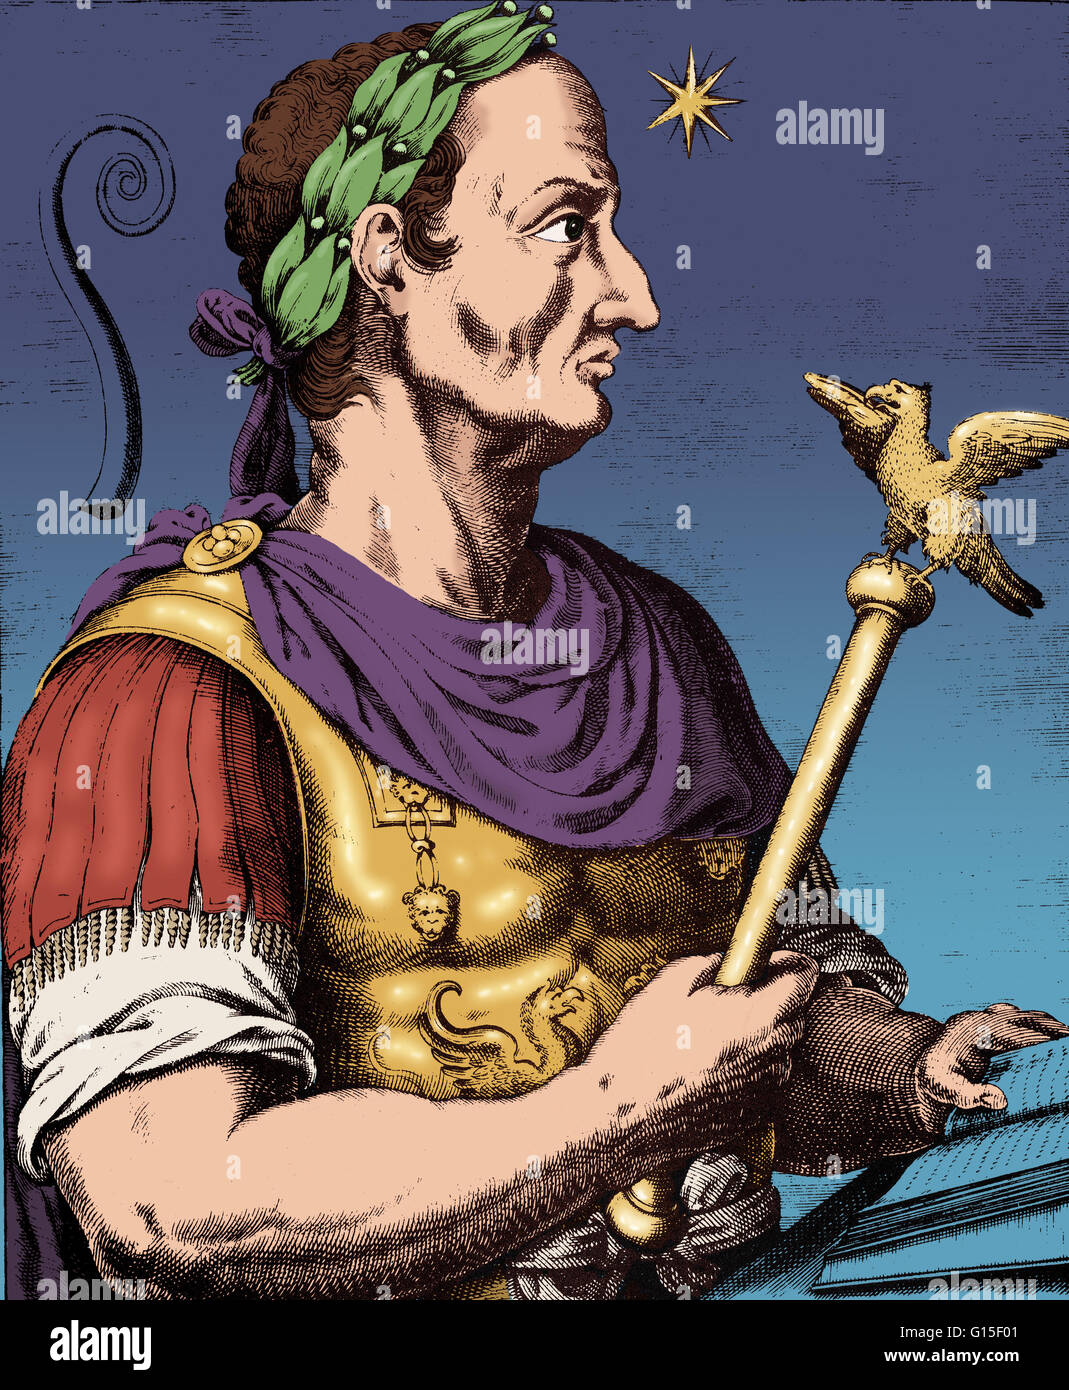 Gaius Julius César (100-44 av. J.-C.) était un général et homme d'état Romain. Il a joué un rôle critique dans la transformation progressive de la République romaine dans l'Empire romain. Dans les campagnes militaires pour sécuriser la domination romaine sur la province de la Gaule (Franc d'aujourd'hui Banque D'Images